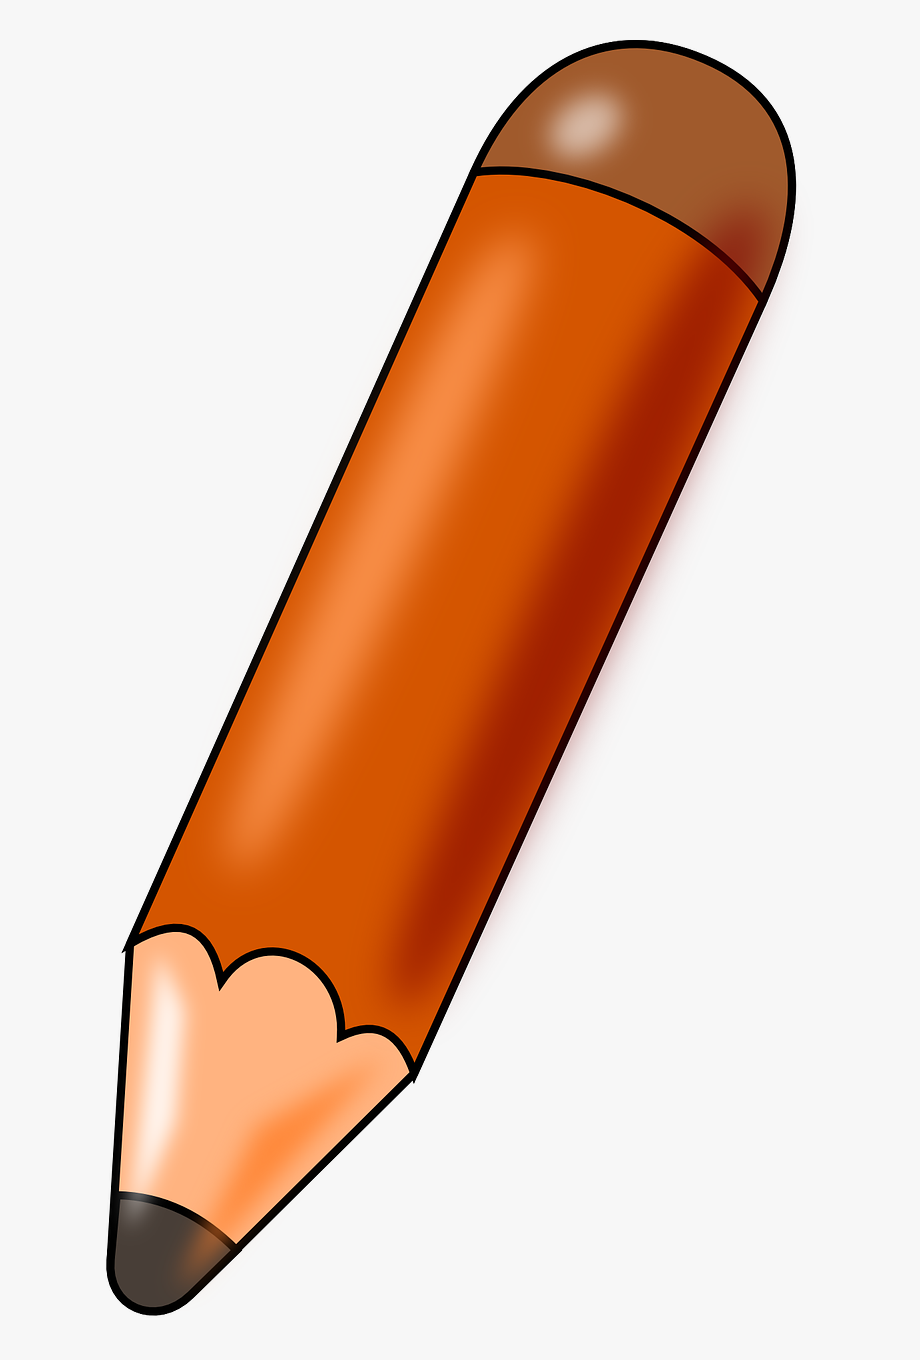 pencils clipart orange